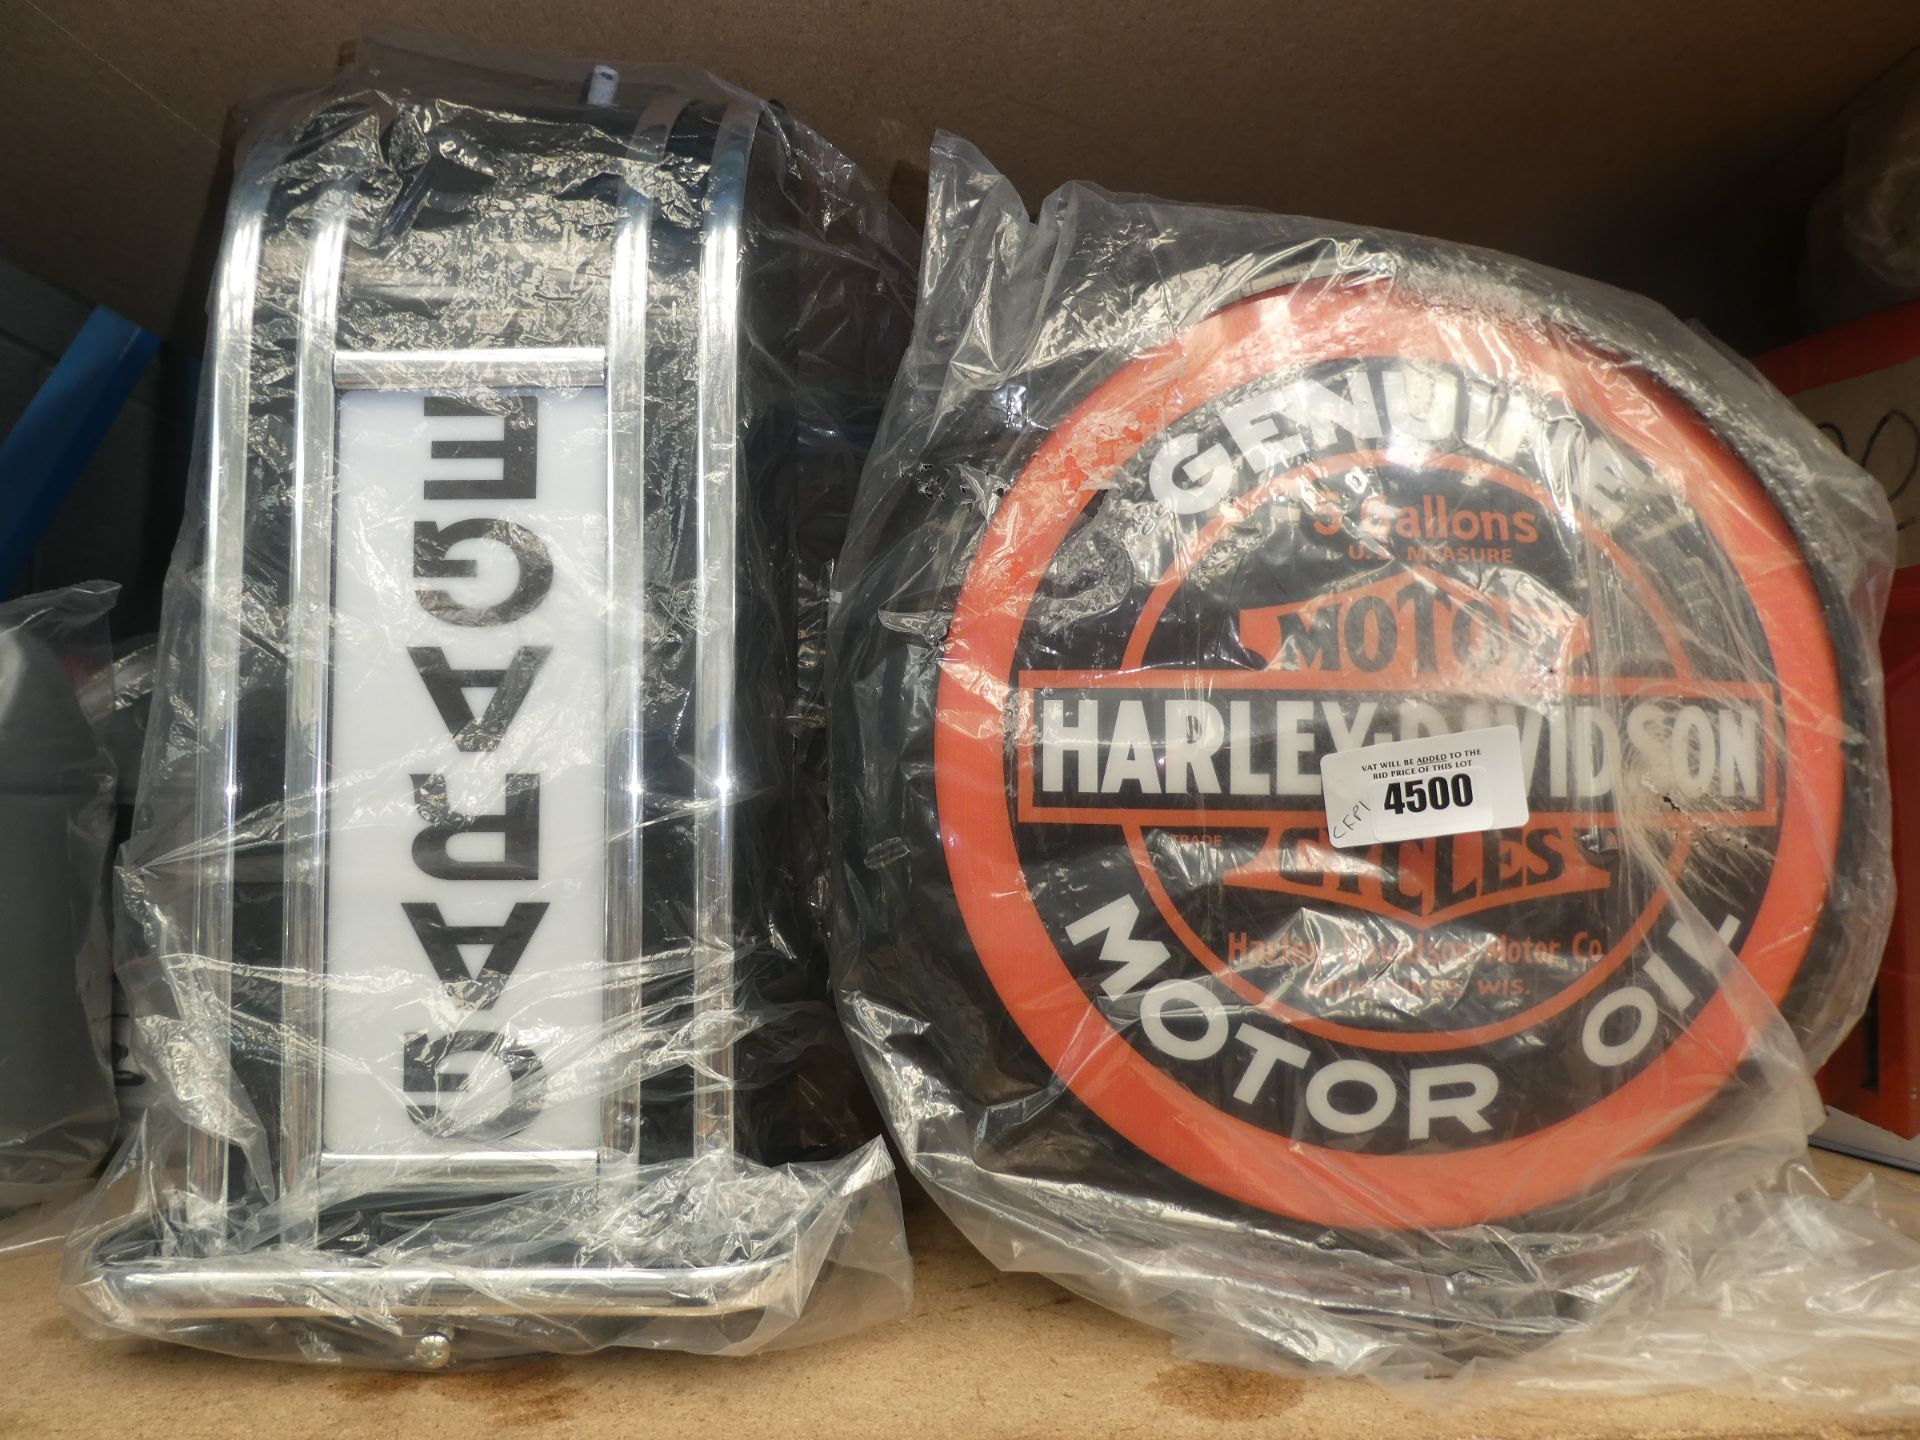 Harley Davidson motor oil sign and a garage sign